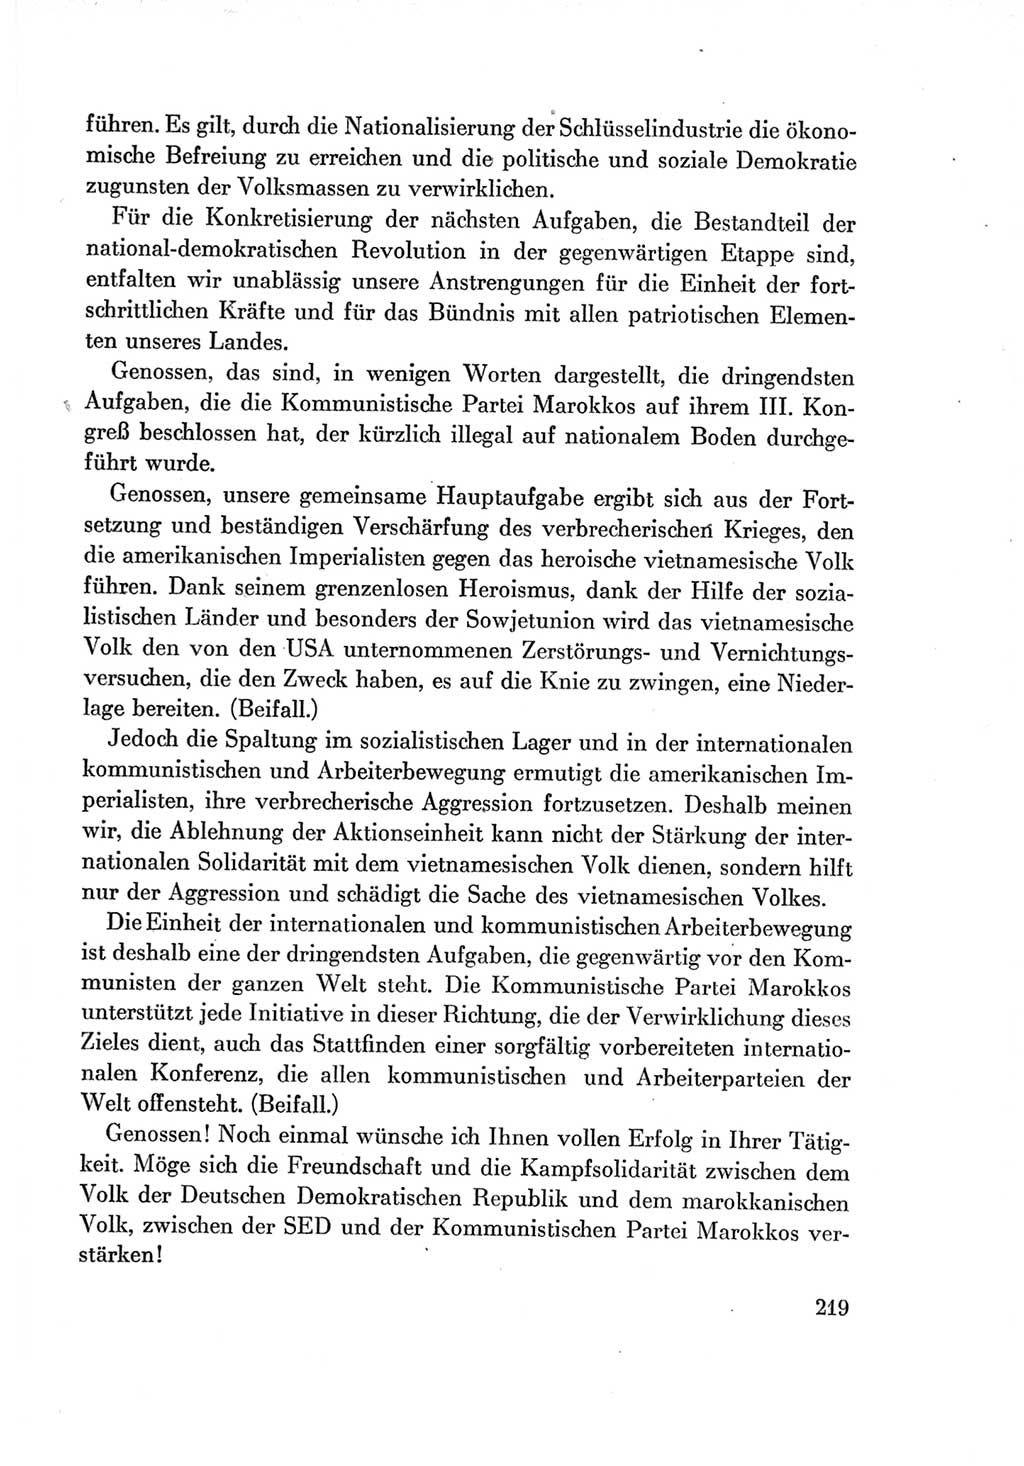 Protokoll der Verhandlungen des Ⅶ. Parteitages der Sozialistischen Einheitspartei Deutschlands (SED) [Deutsche Demokratische Republik (DDR)] 1967, Band Ⅱ, Seite 219 (Prot. Verh. Ⅶ. PT SED DDR 1967, Bd. Ⅱ, S. 219)